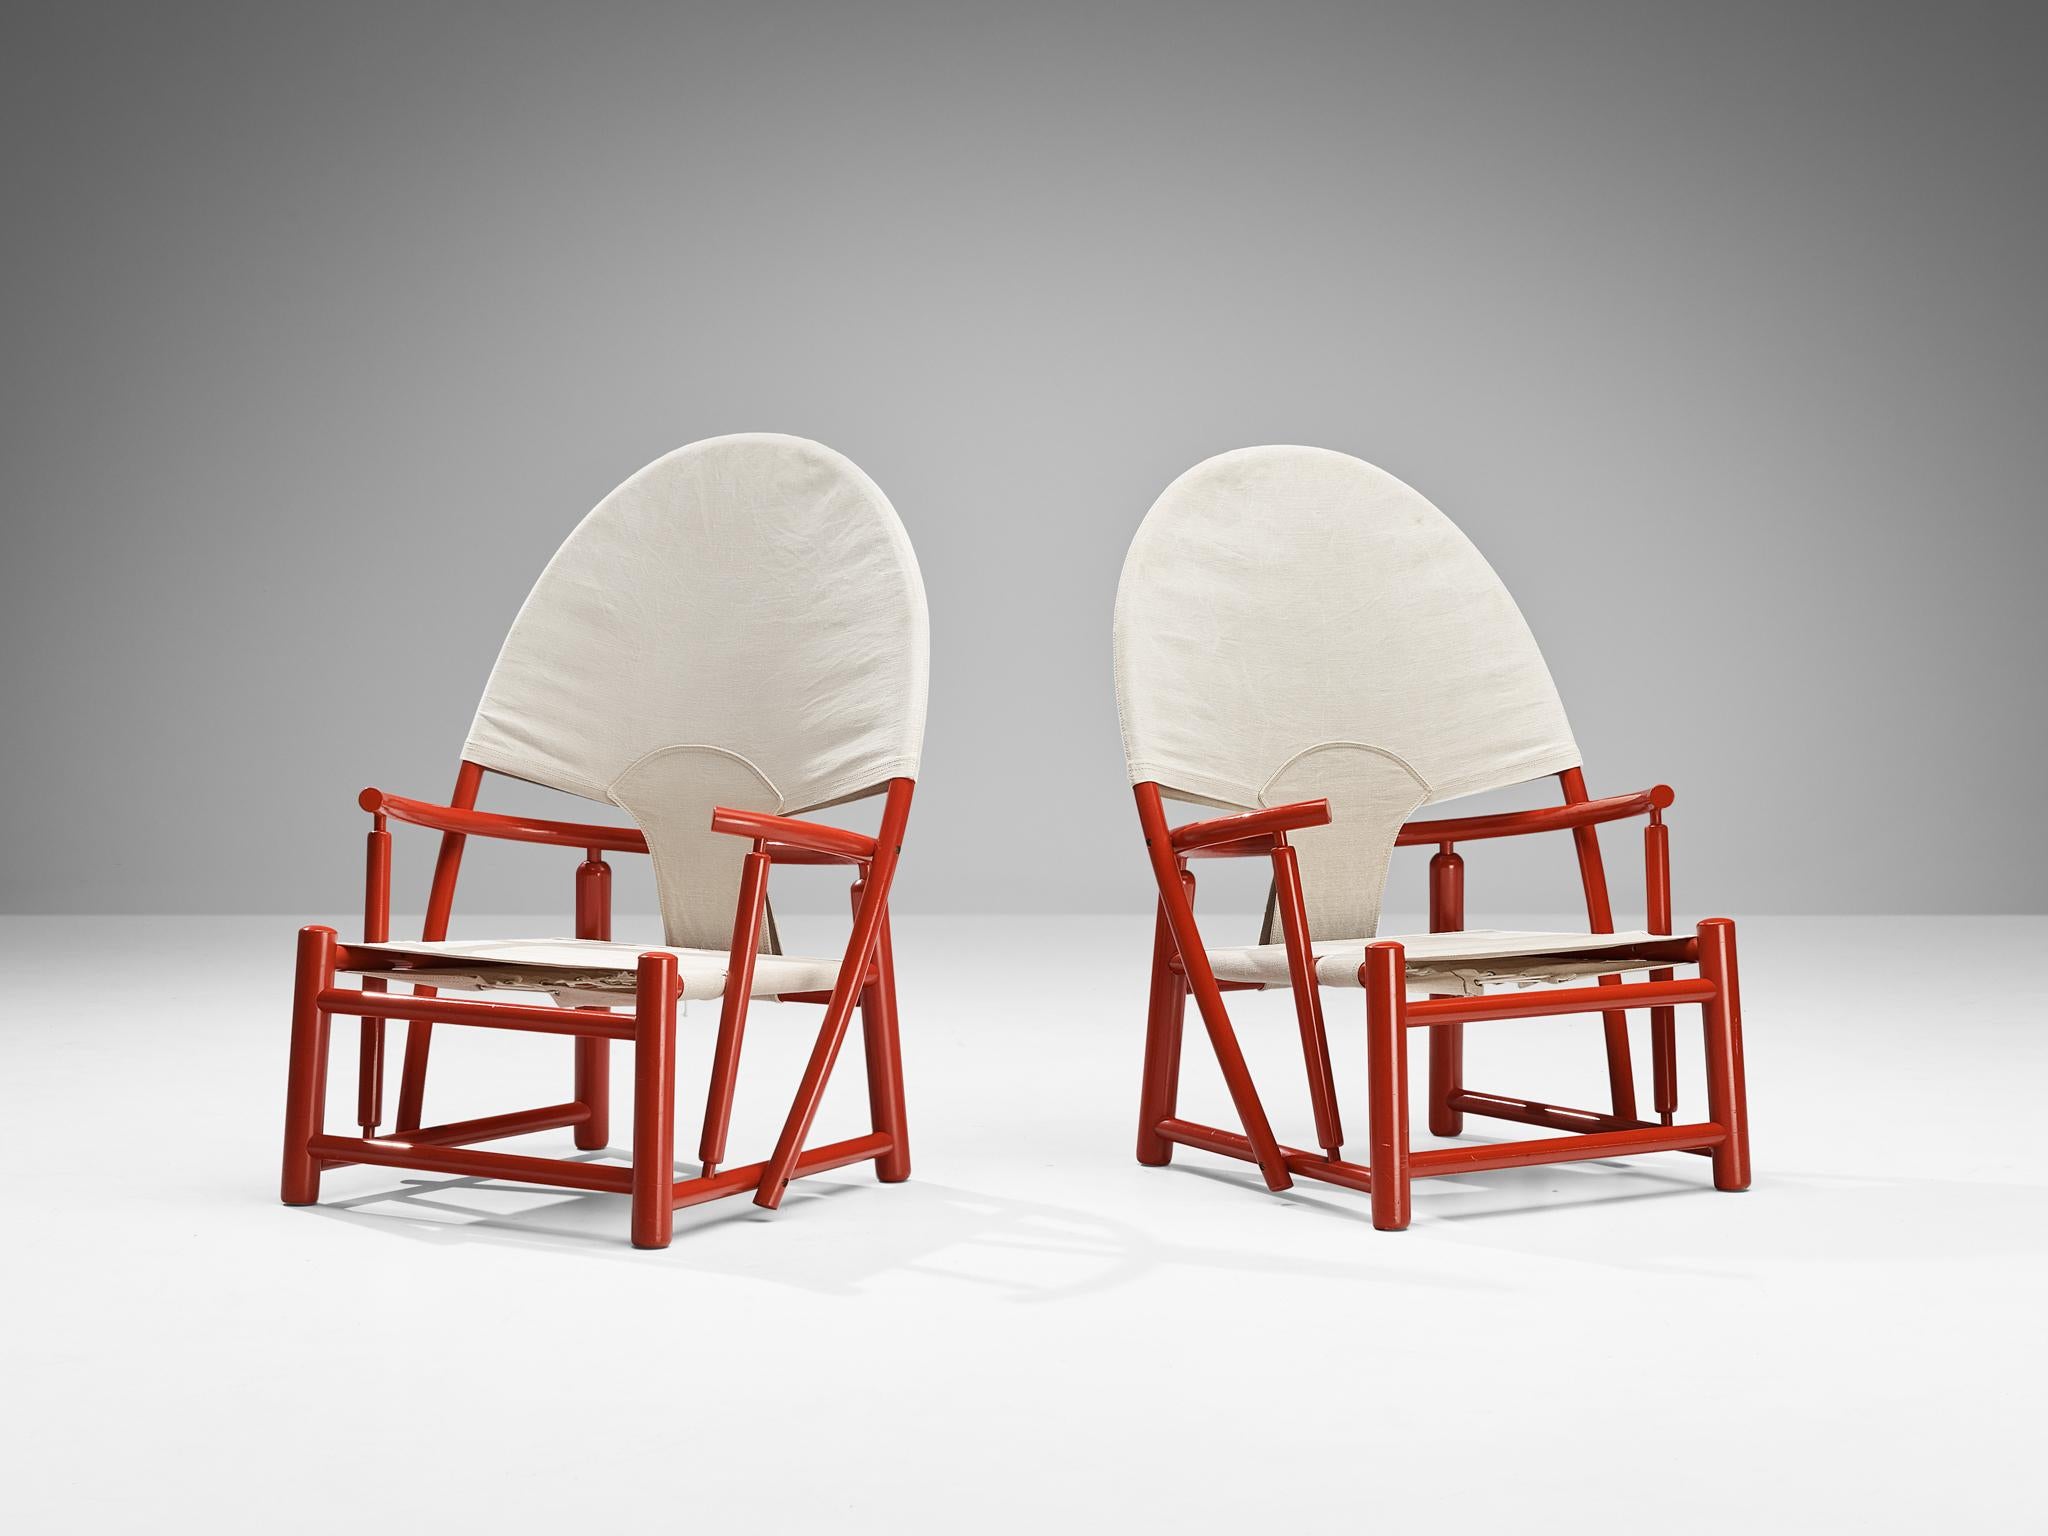 Fin du 20e siècle Werther Toffoloni & Piero Palange Paire de chaises rouges 